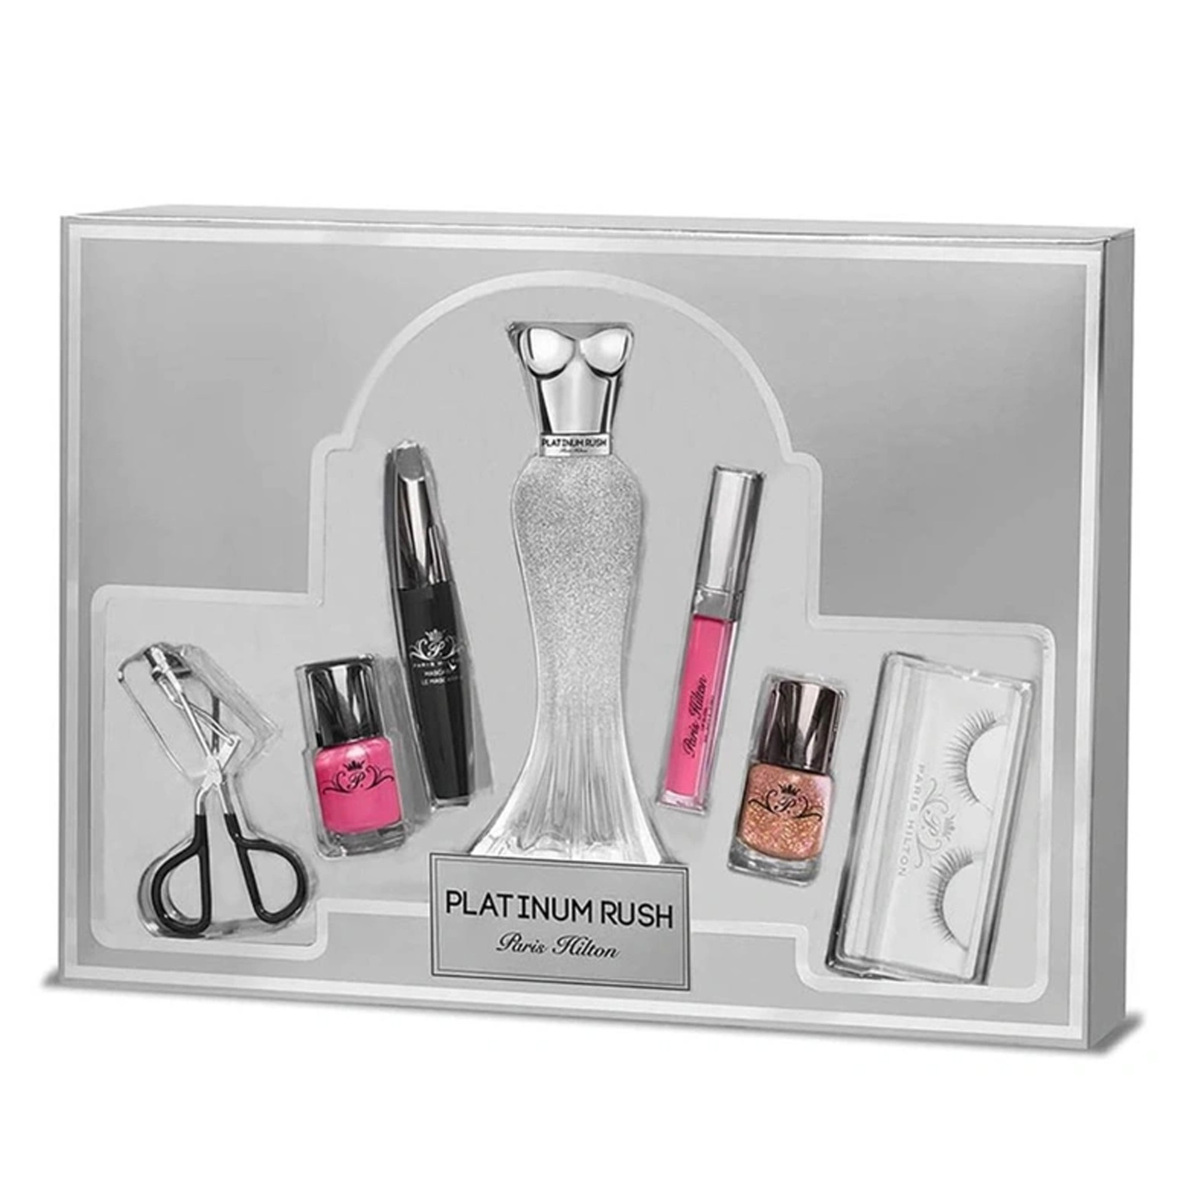 Paris Hilton Platinum Rush 7 pcs Set for Women, EDP 100 ml + Eyelash Curler + Nail Polish 15 ml x 2 + Lip Gloss 3.5 ml + Mascara 10 ml + Eyelashes